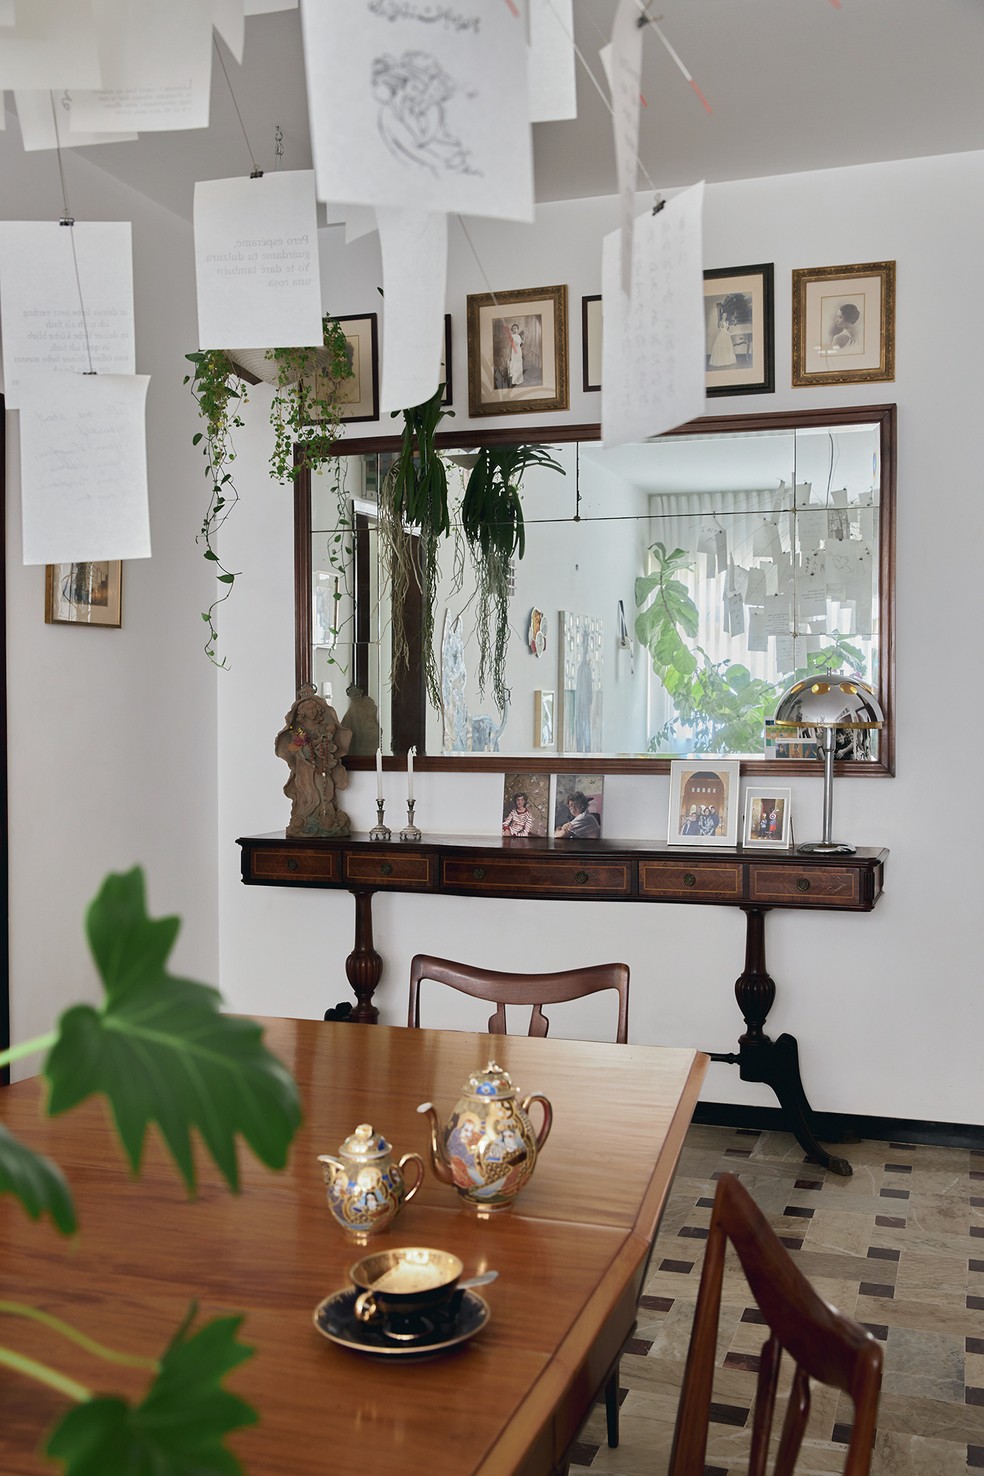 Outro ângulo do ambiente mostra aparador e espelho presenteados pela antiga proprietária do apartamento — Foto: Luiza Ananias